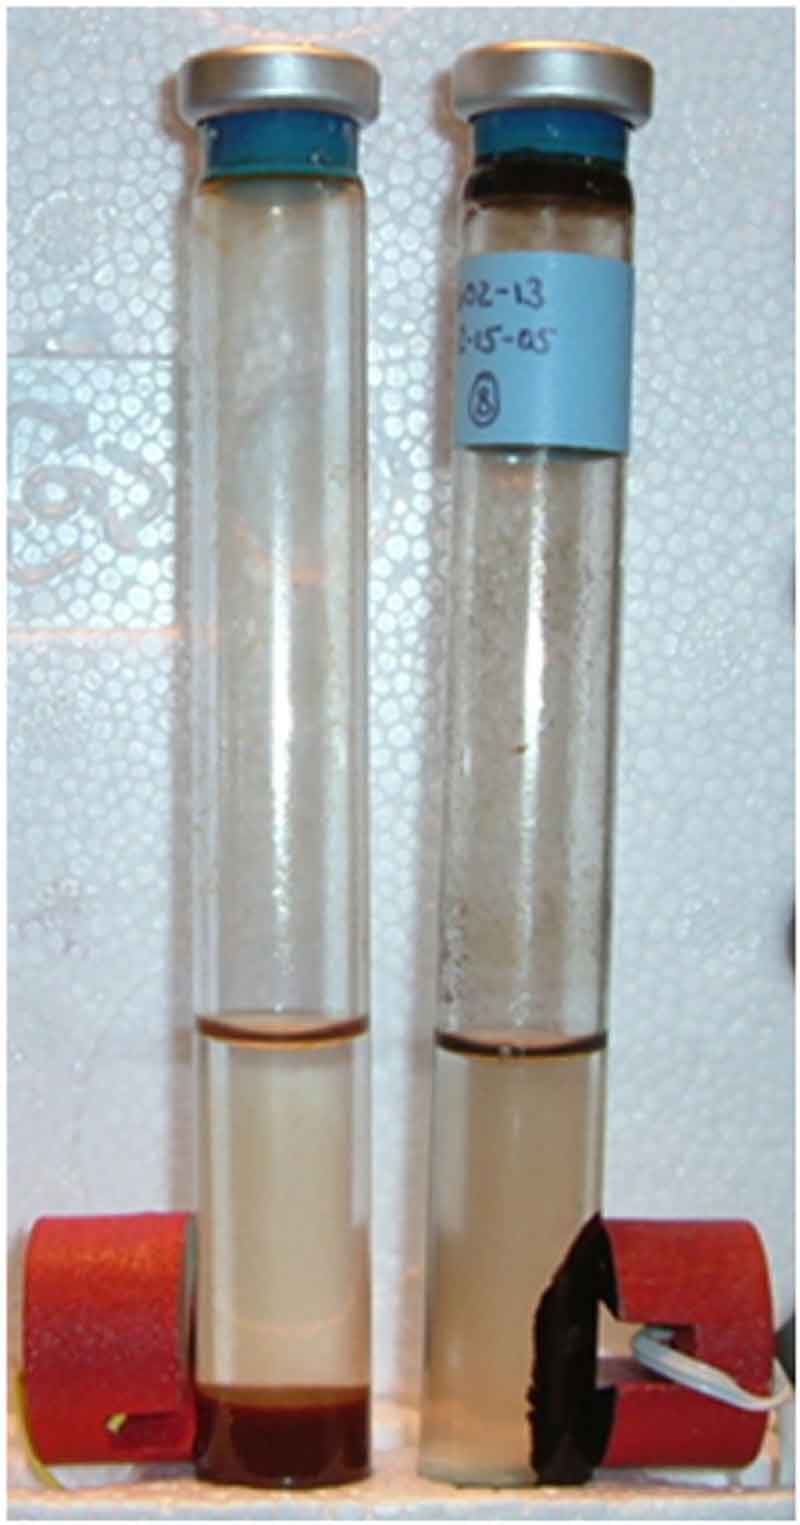 Pertumbuhan mikroba hipertermofil yang tumbuh pada 203° F (95° C) dan mengubah gas hidrogen, gas karbon dioksida, dan karat besi (zat cokelat di dalam tabung kiri) menjadi besi magnetik hitam (tabung kanan). Magnet merah terlihat mengapit kedua tabung.